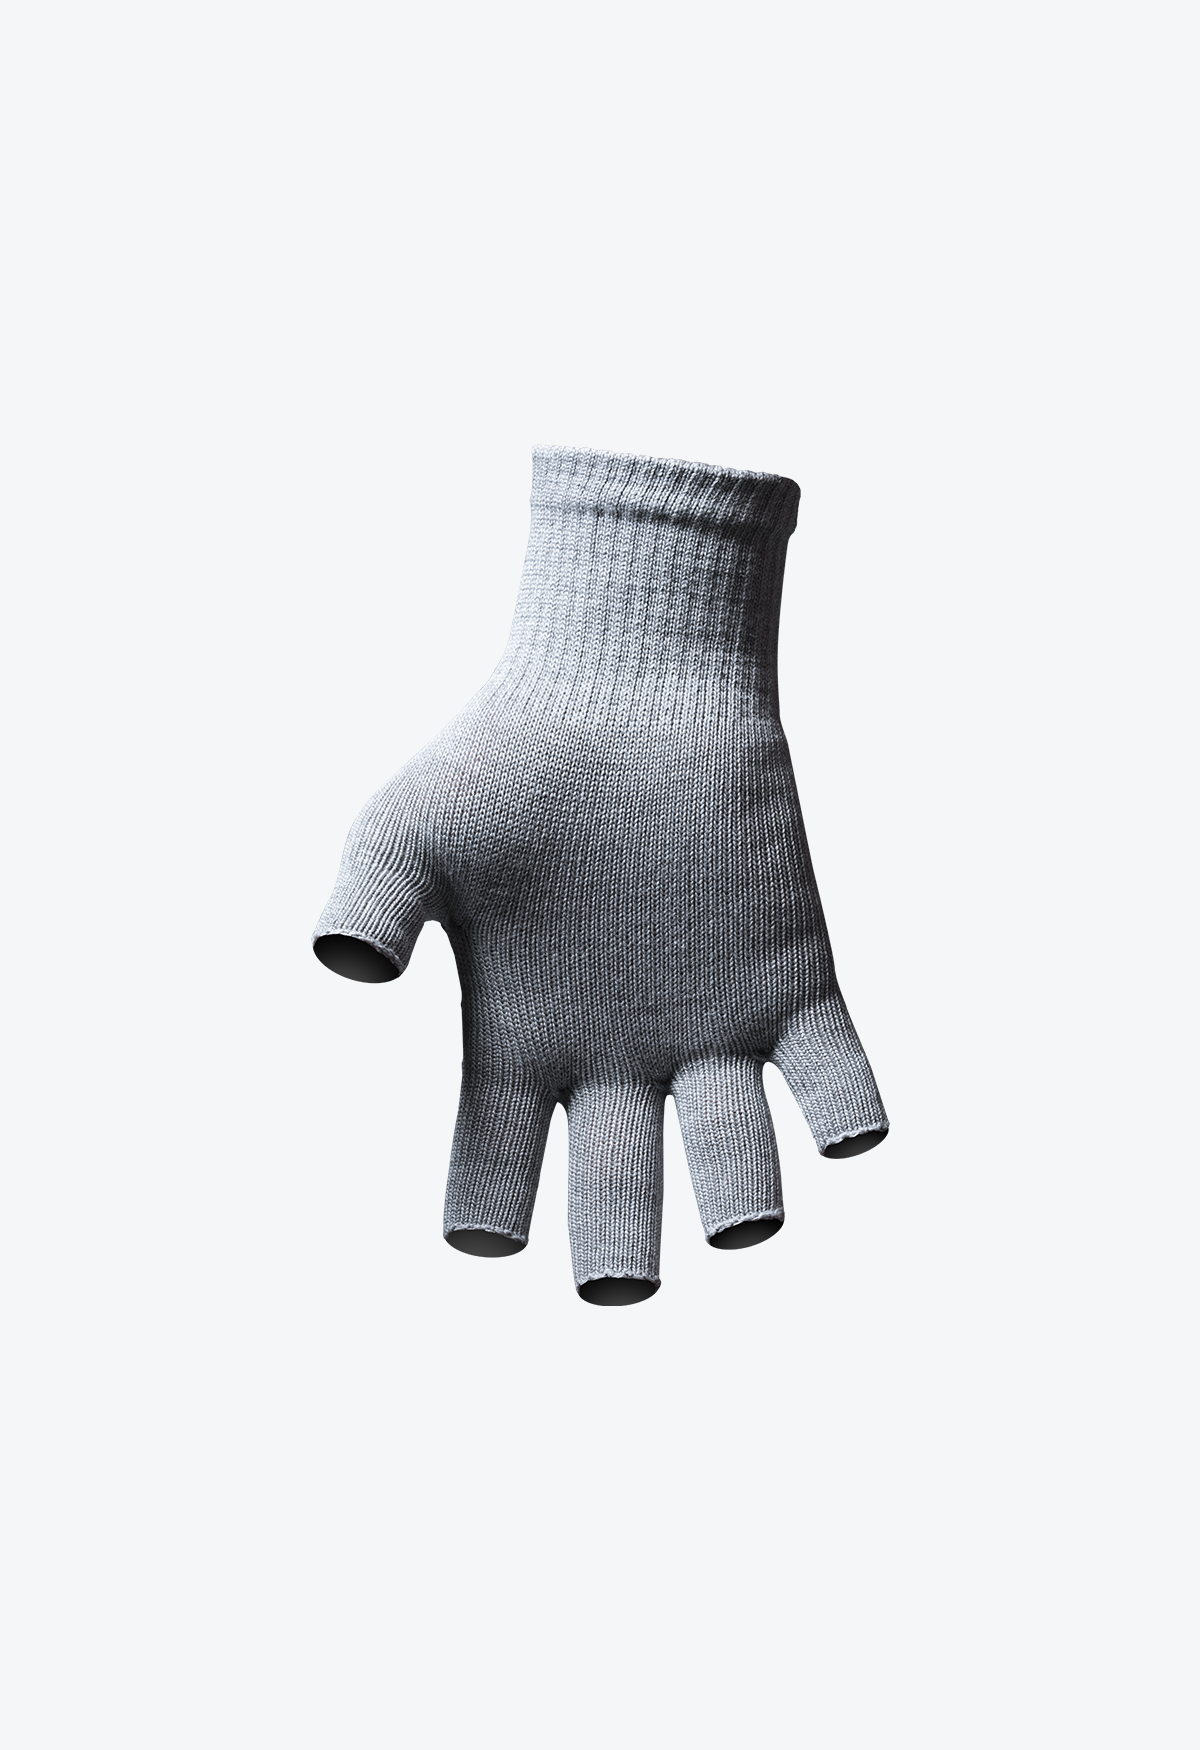 Circulation Gloves - Fingerless